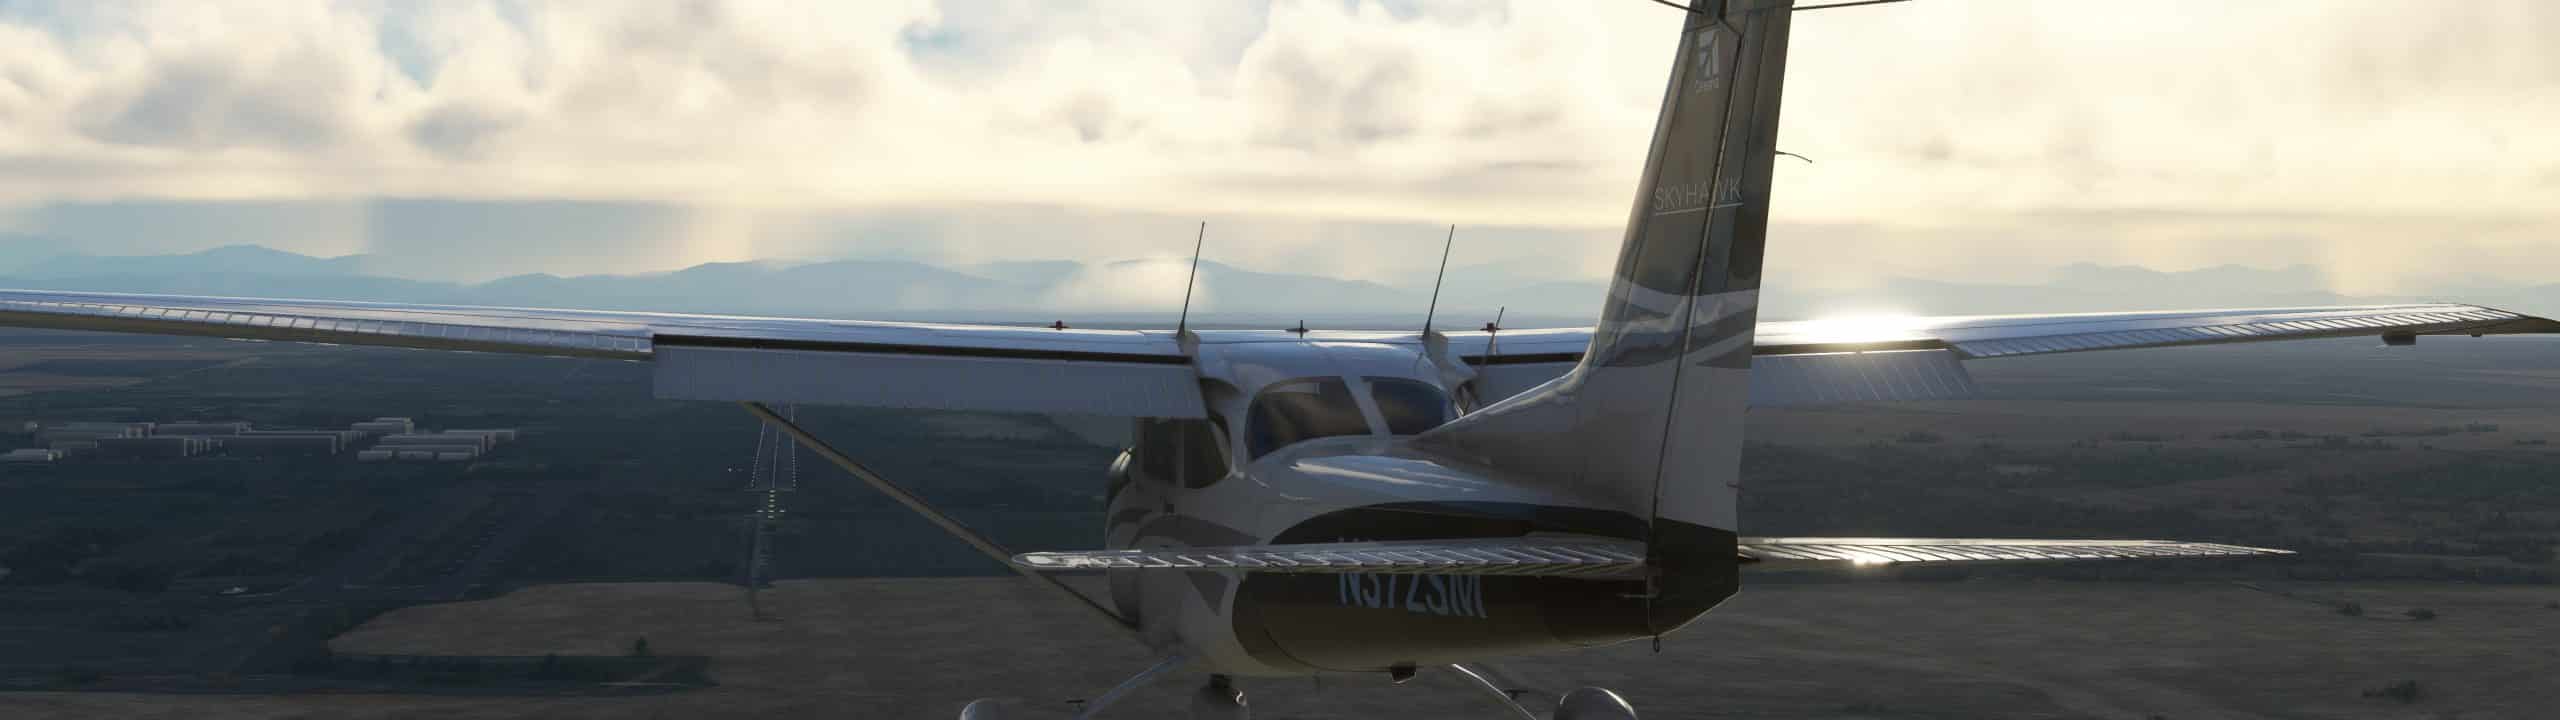 Top 49 Tips in Microsoft Flight Simulator - VR Flight World